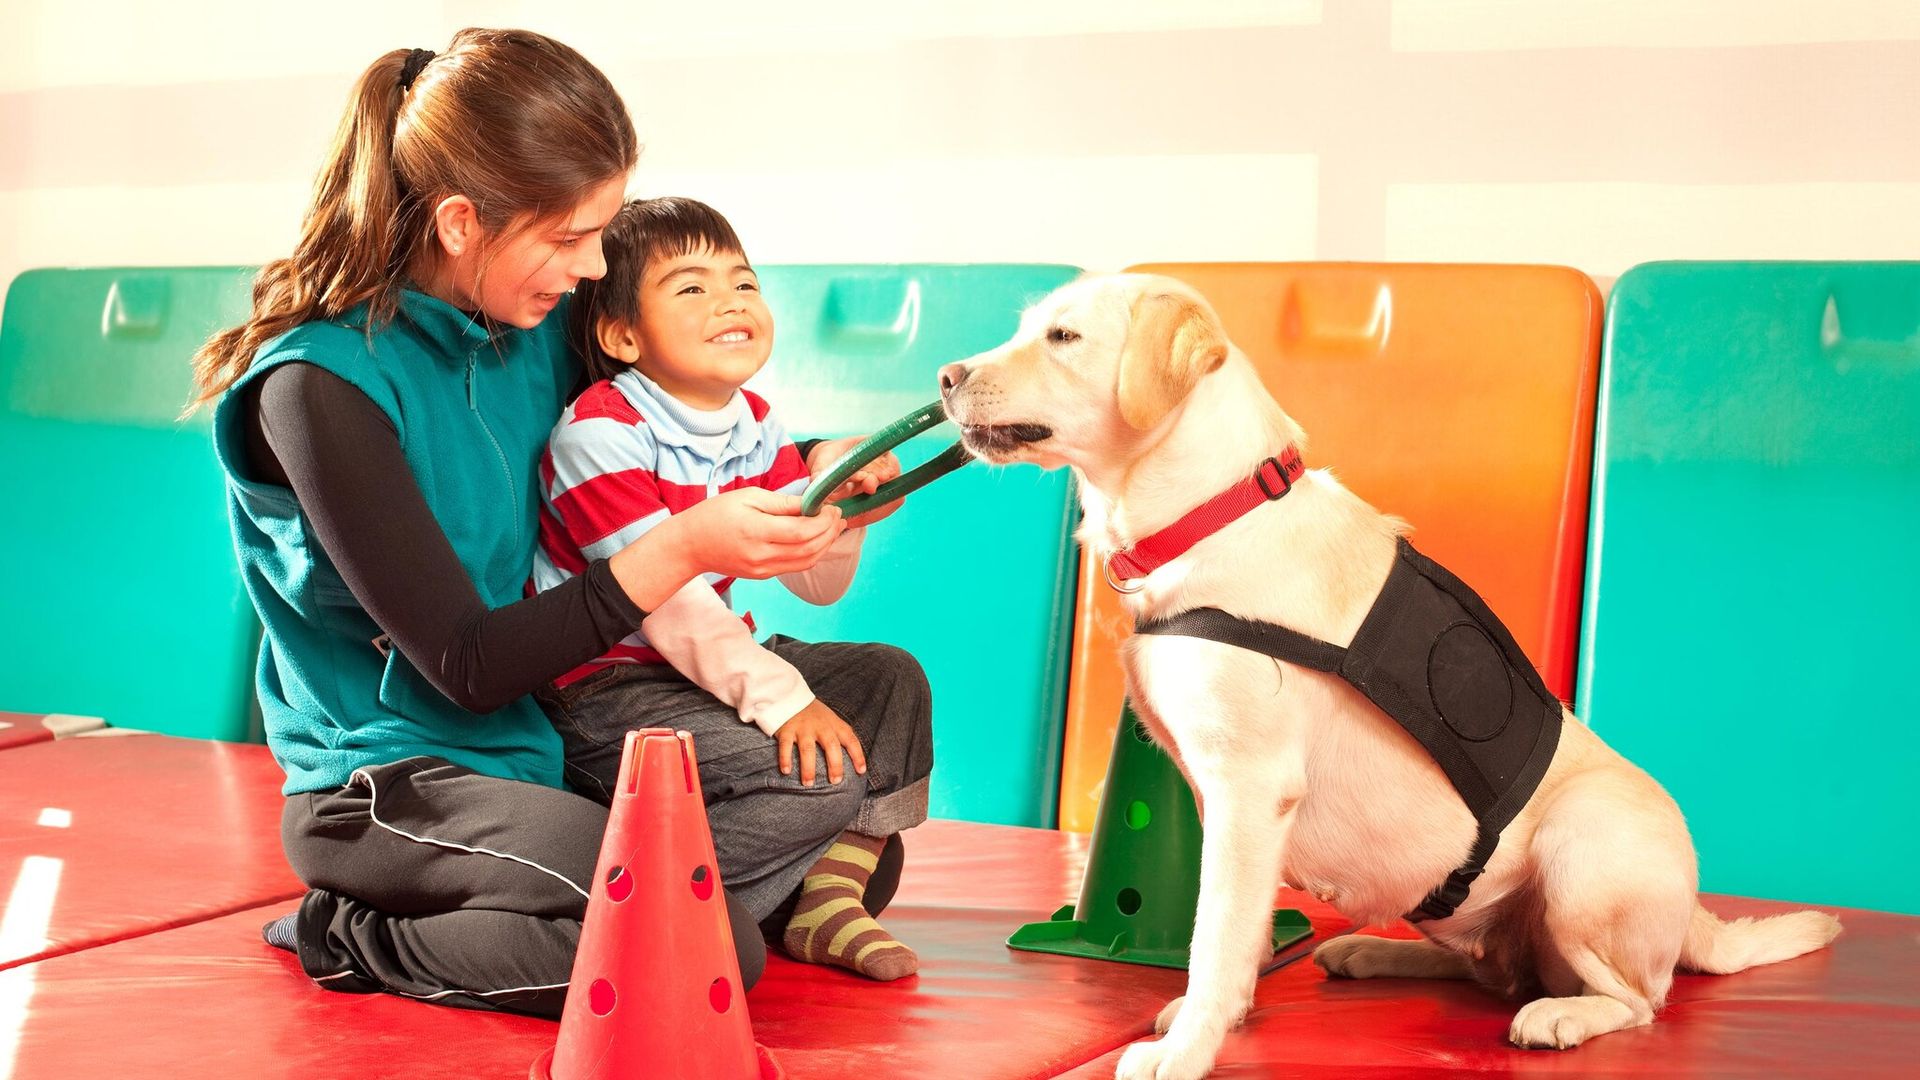 Terapia con perros, una poderosa herramienta que les ayuda a canalizar emociones y a socializar